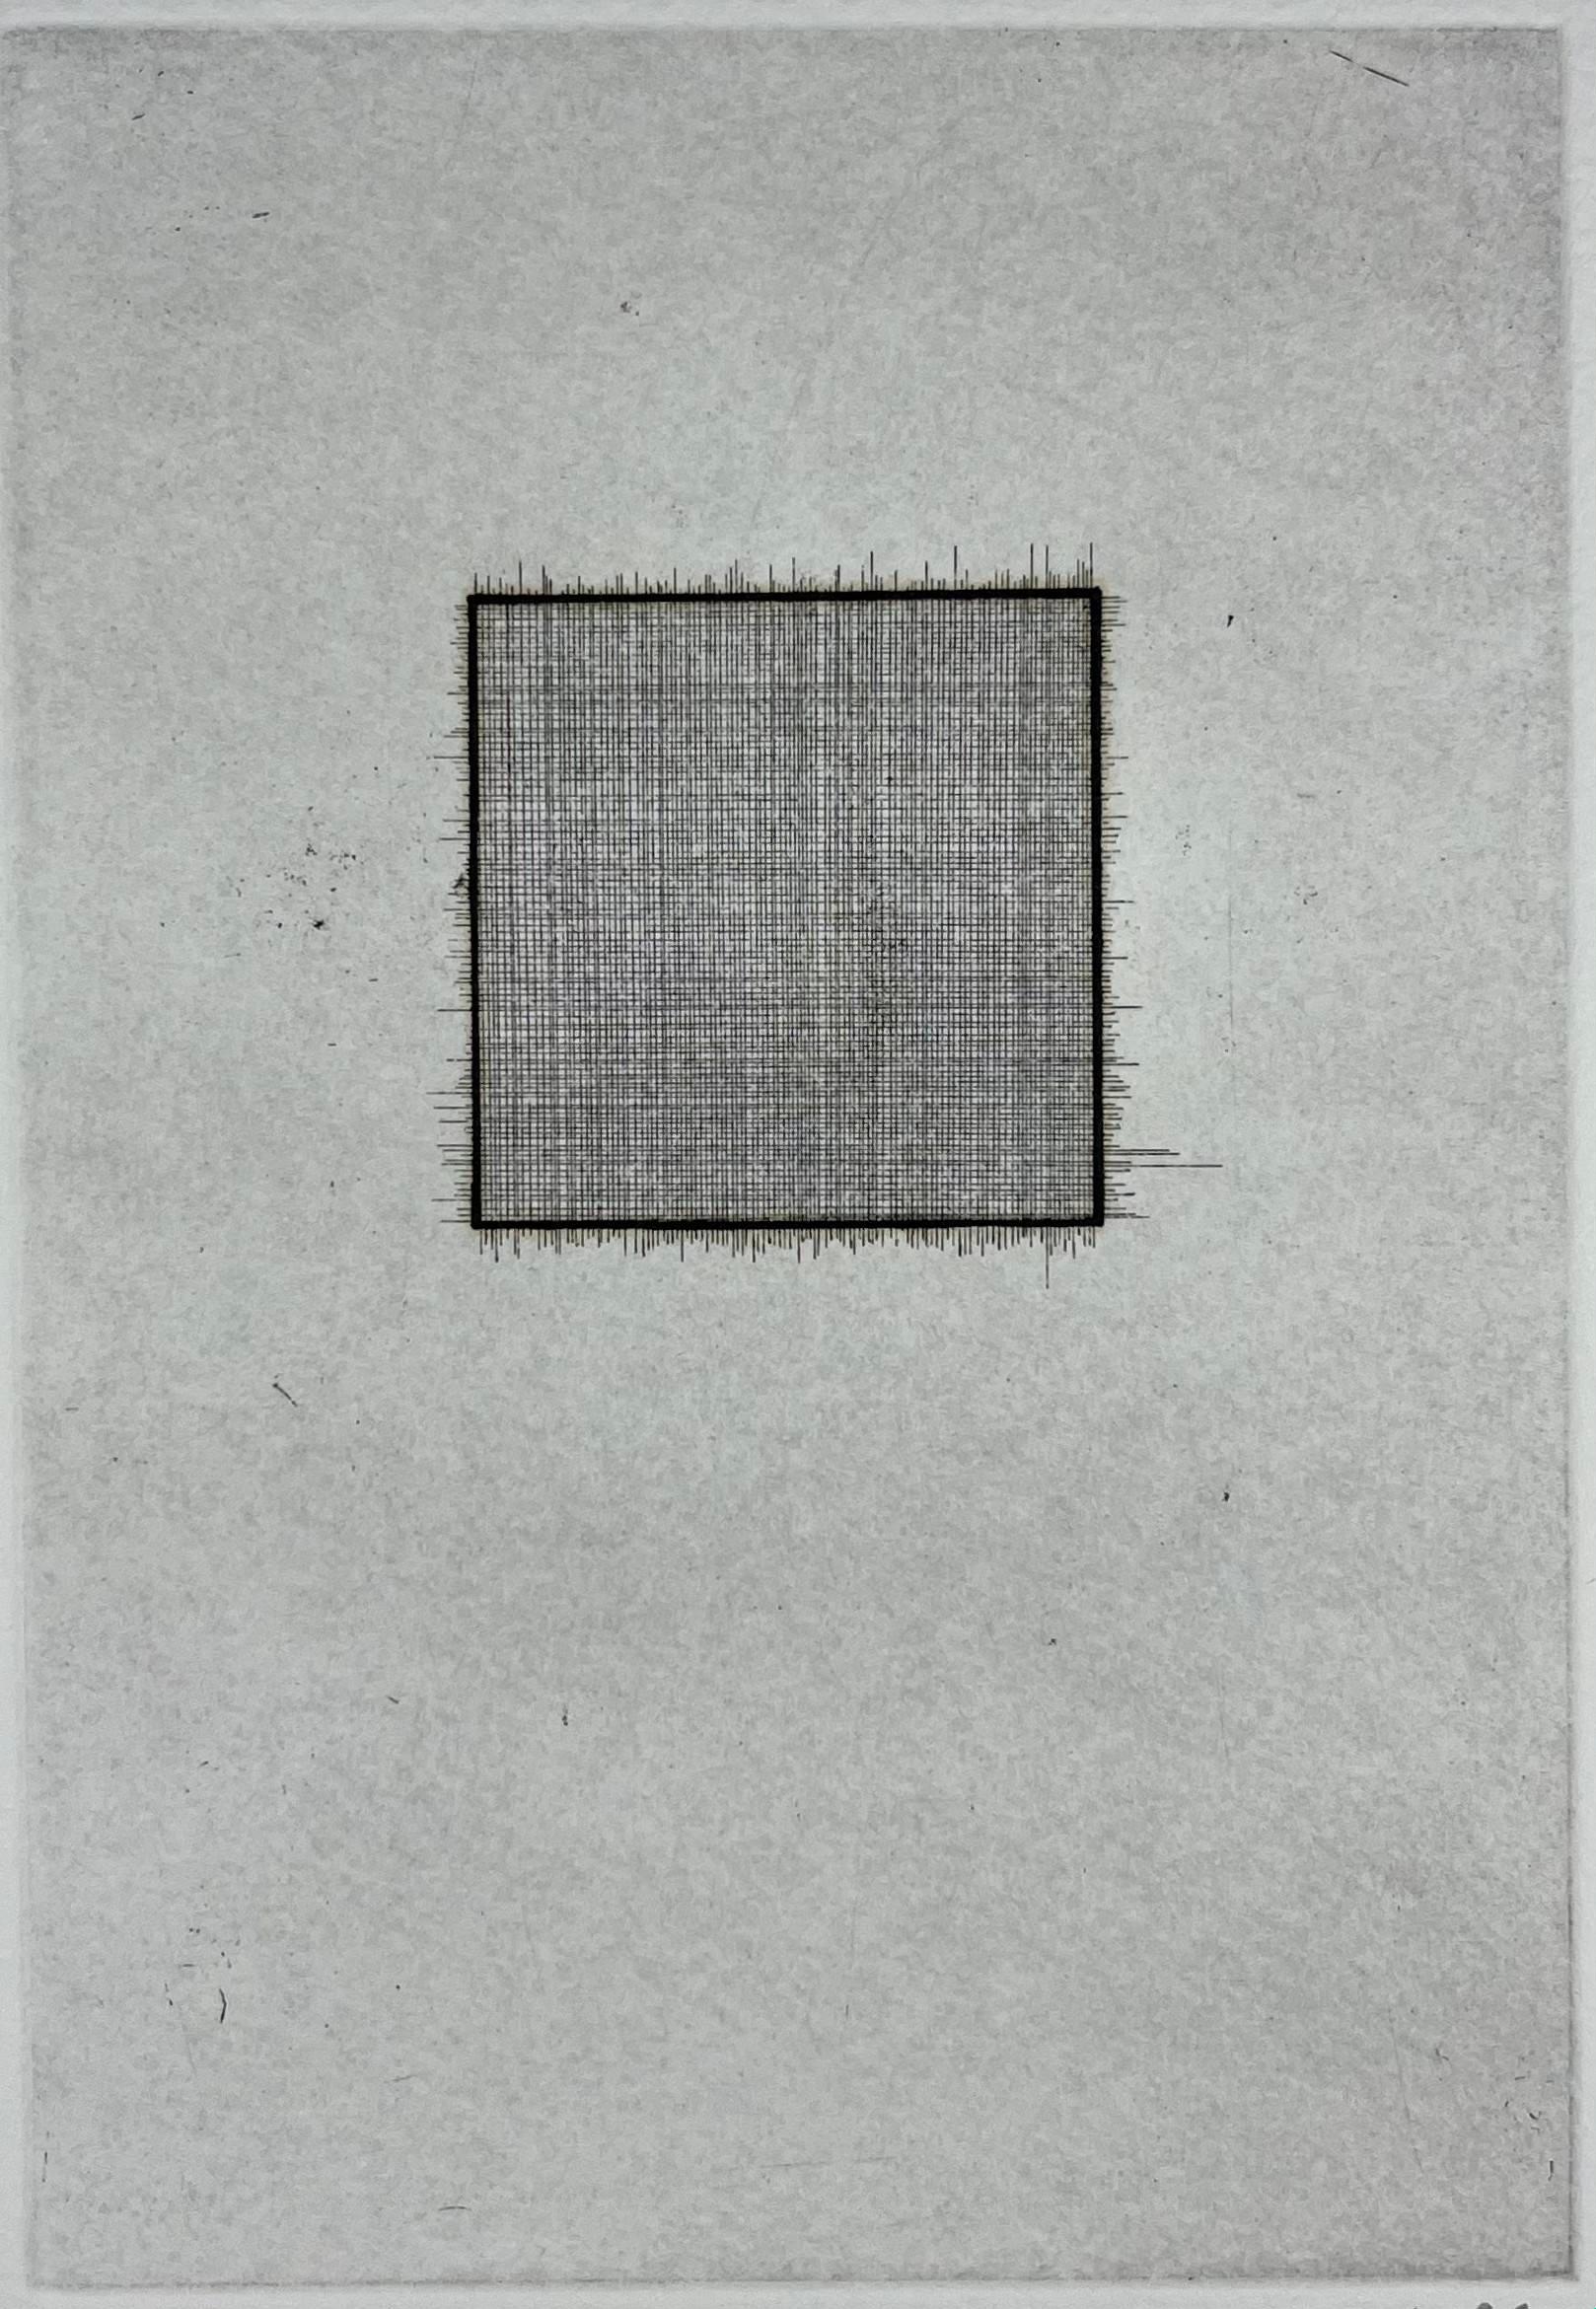 Japan 1986 signierter Original-Kunstdruck Radierung in limitierter Auflage  15x11 Zoll. – Print von Mitsuo Miura